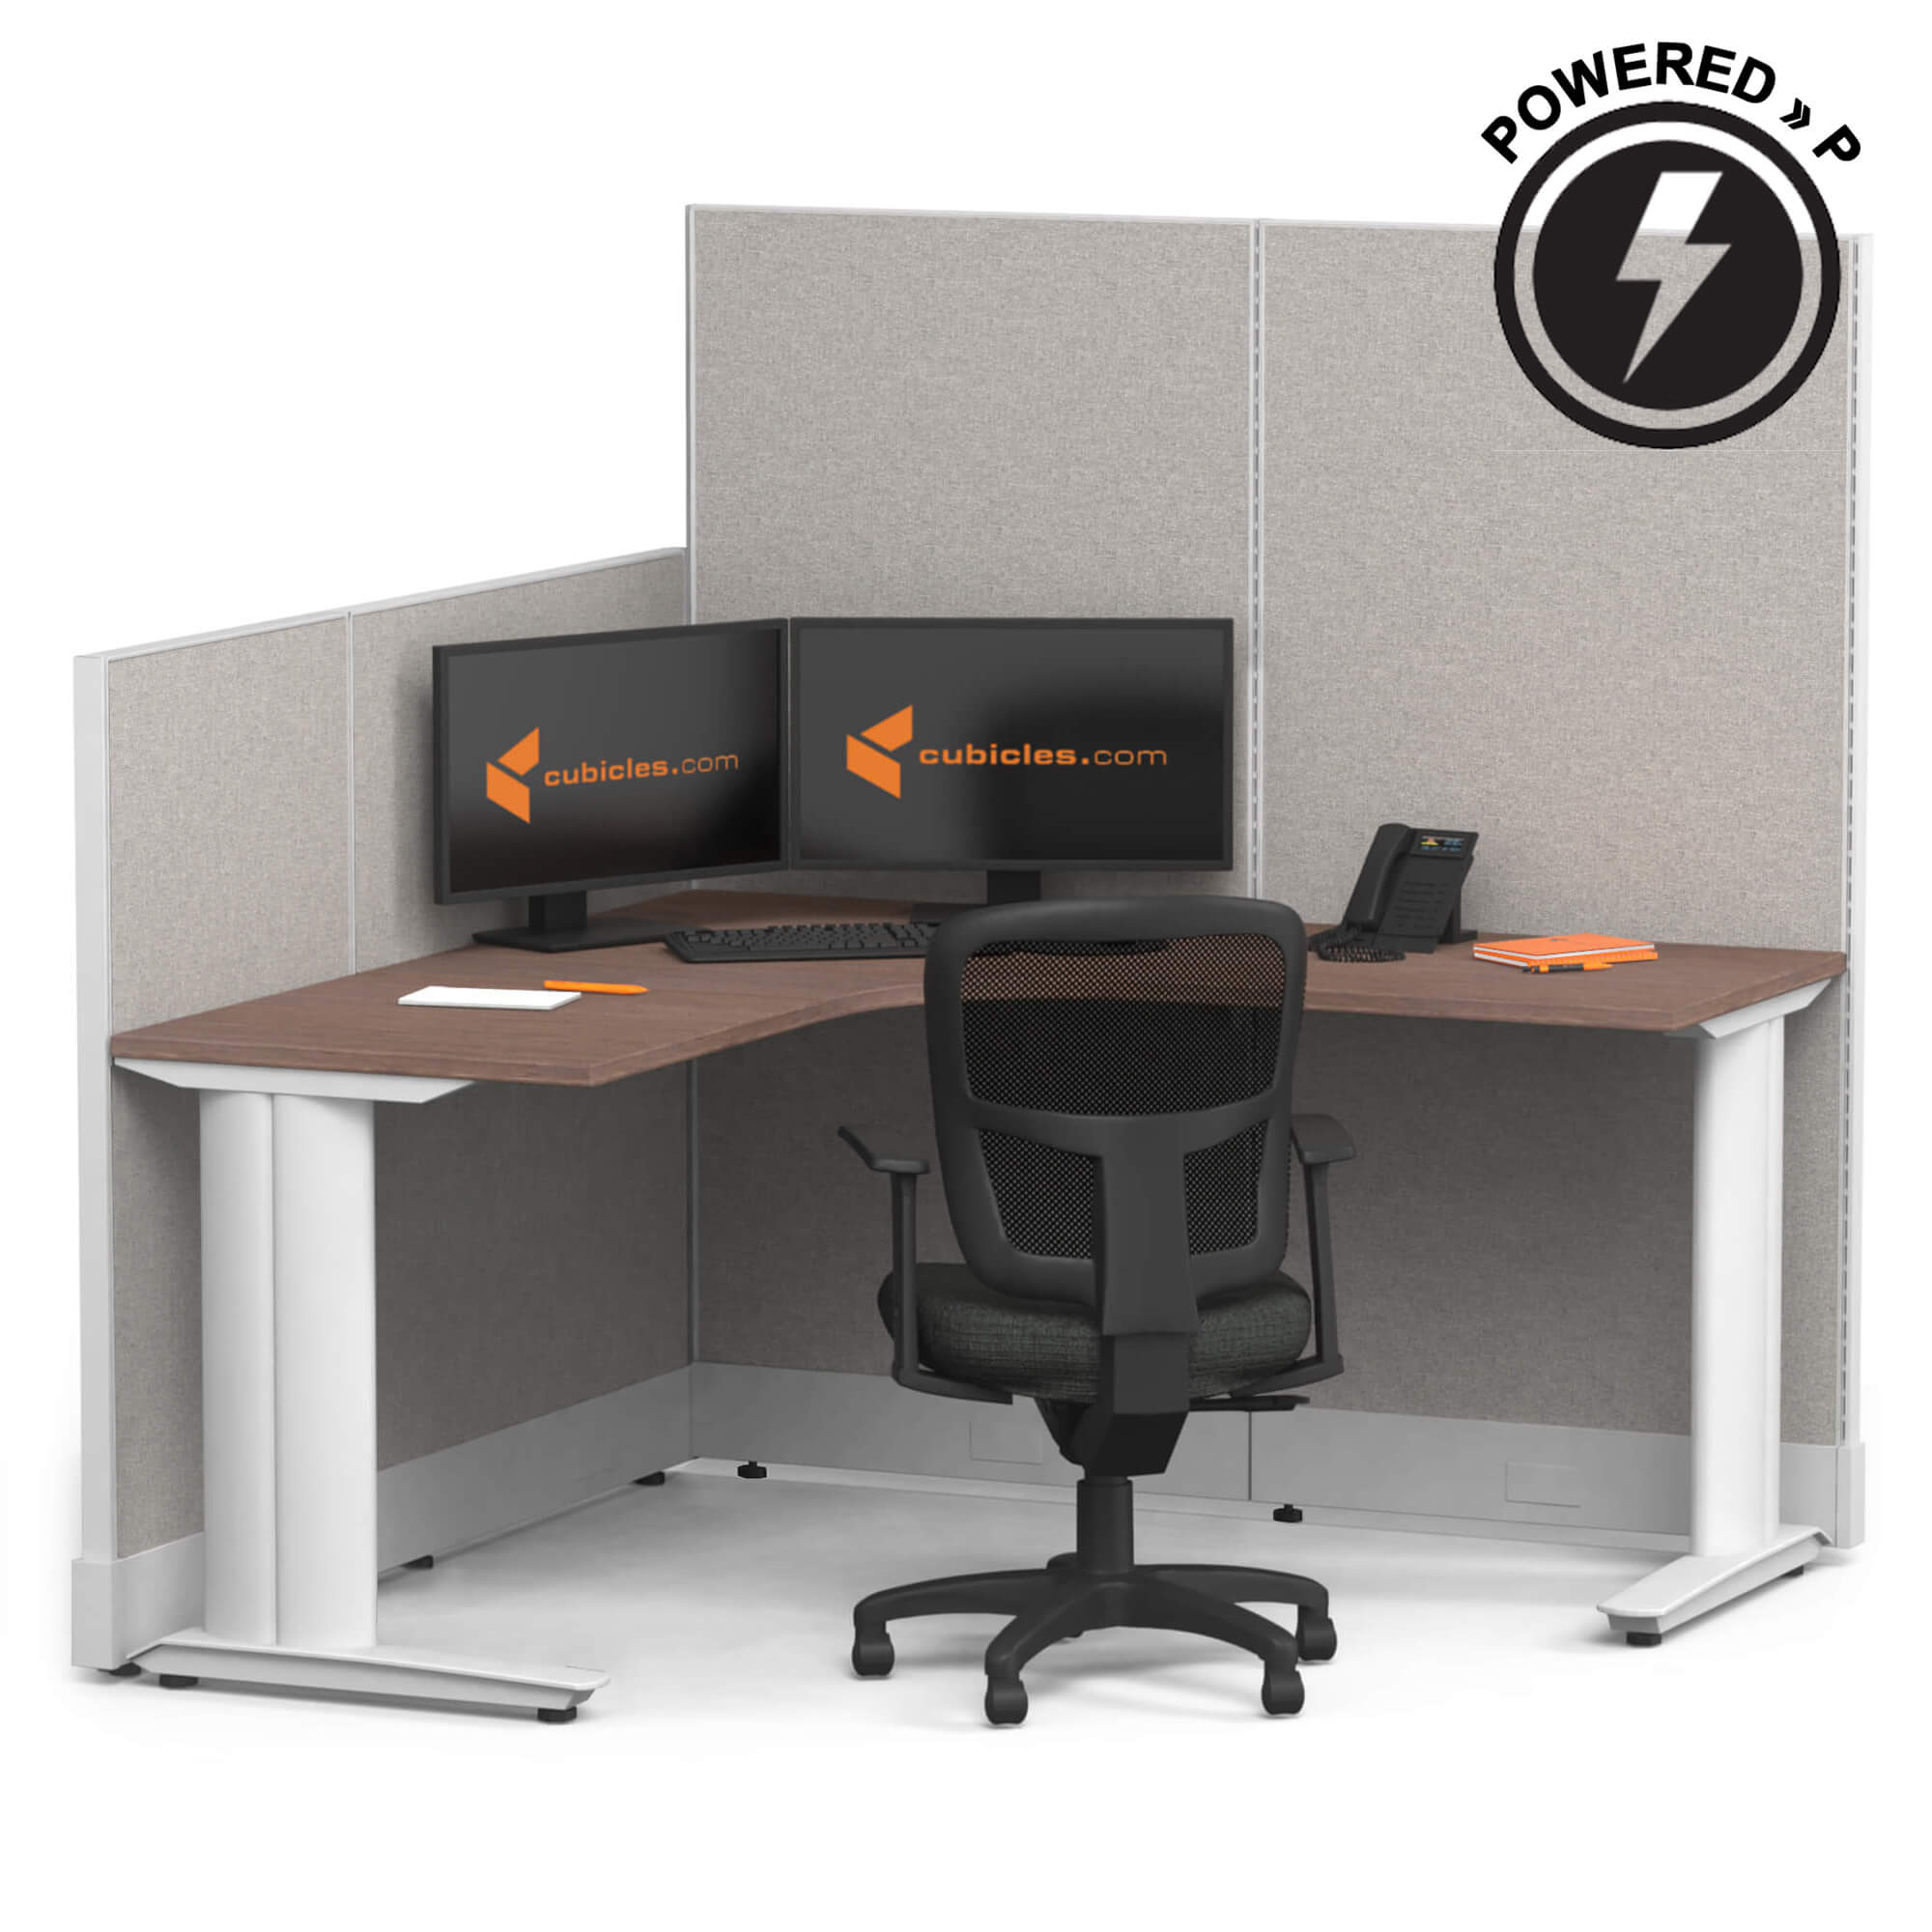 cubicle-desk-l-shaped-workstation-powered-sign.jpg